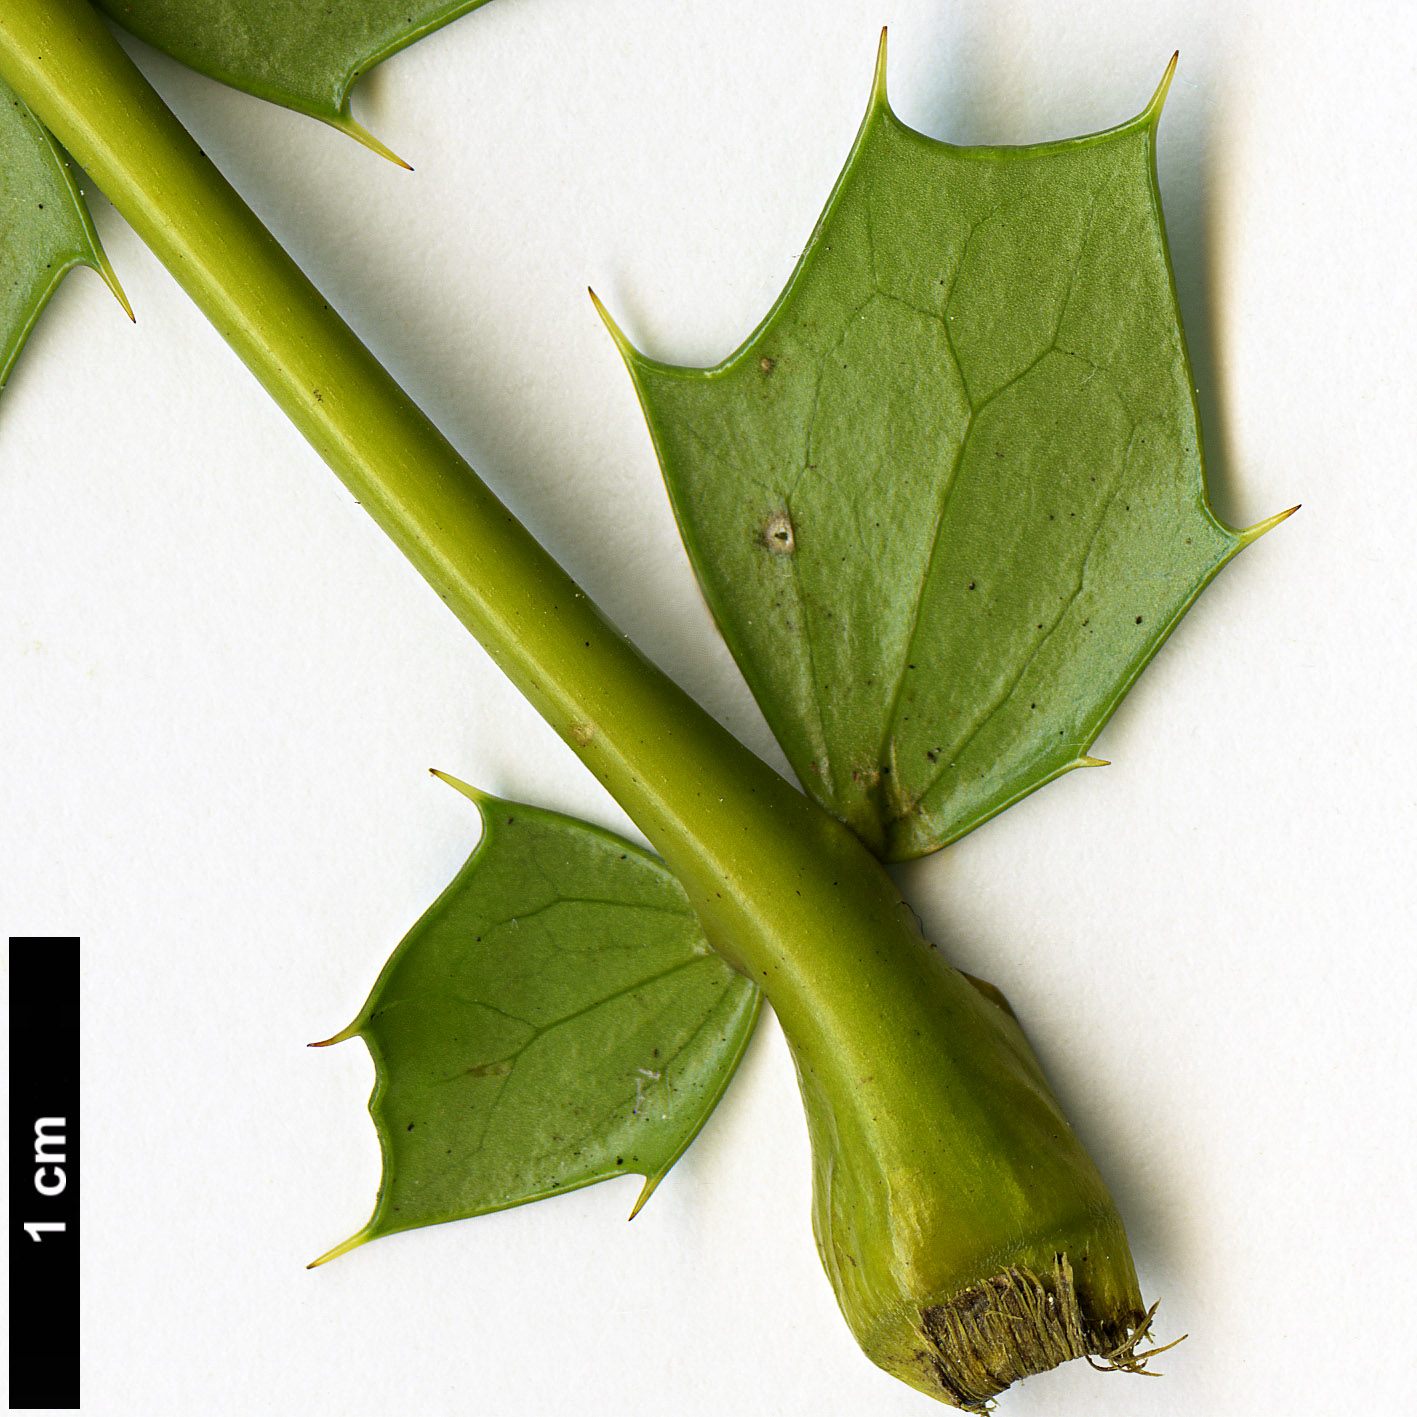 High resolution image: Family: Berberidaceae - Genus: Mahonia - Taxon: napaulensis - SpeciesSub: 'Maharajah'